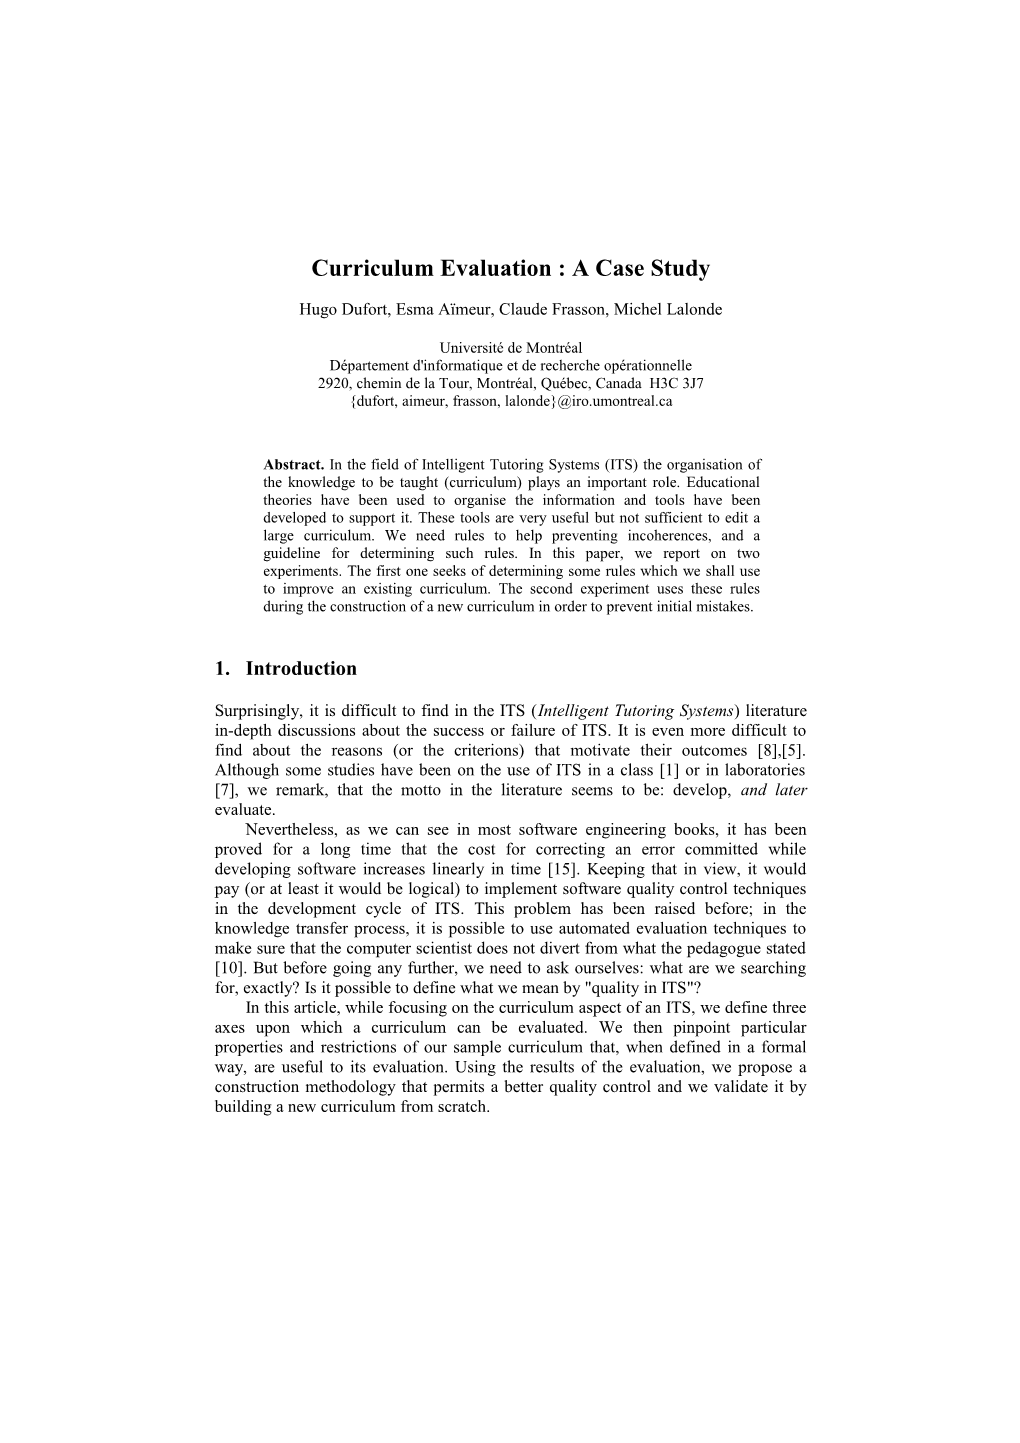 Curriculum Evaluation : a Case Study